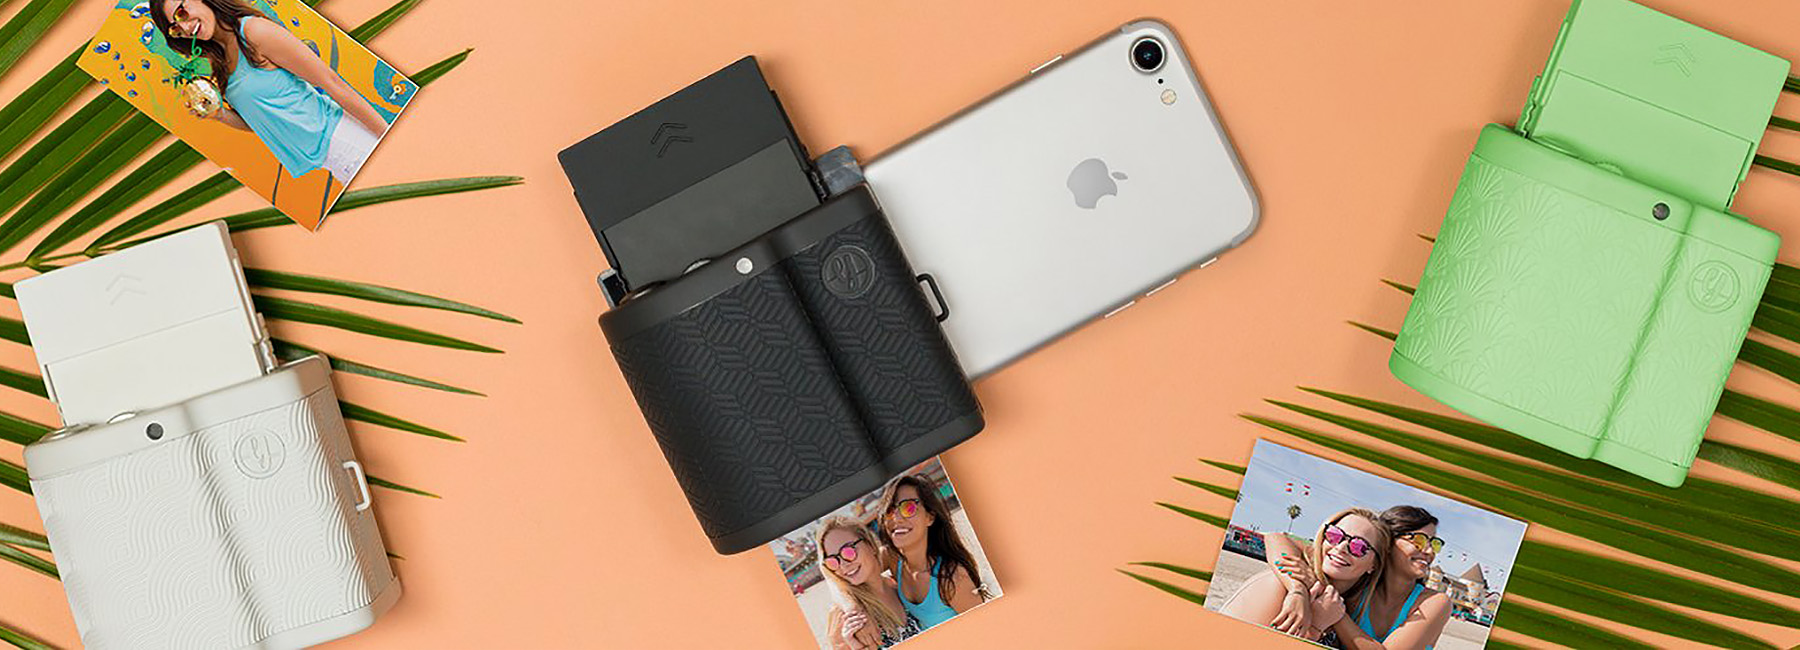 Prynt, convierte tu smartphone en una cámara Polaroid